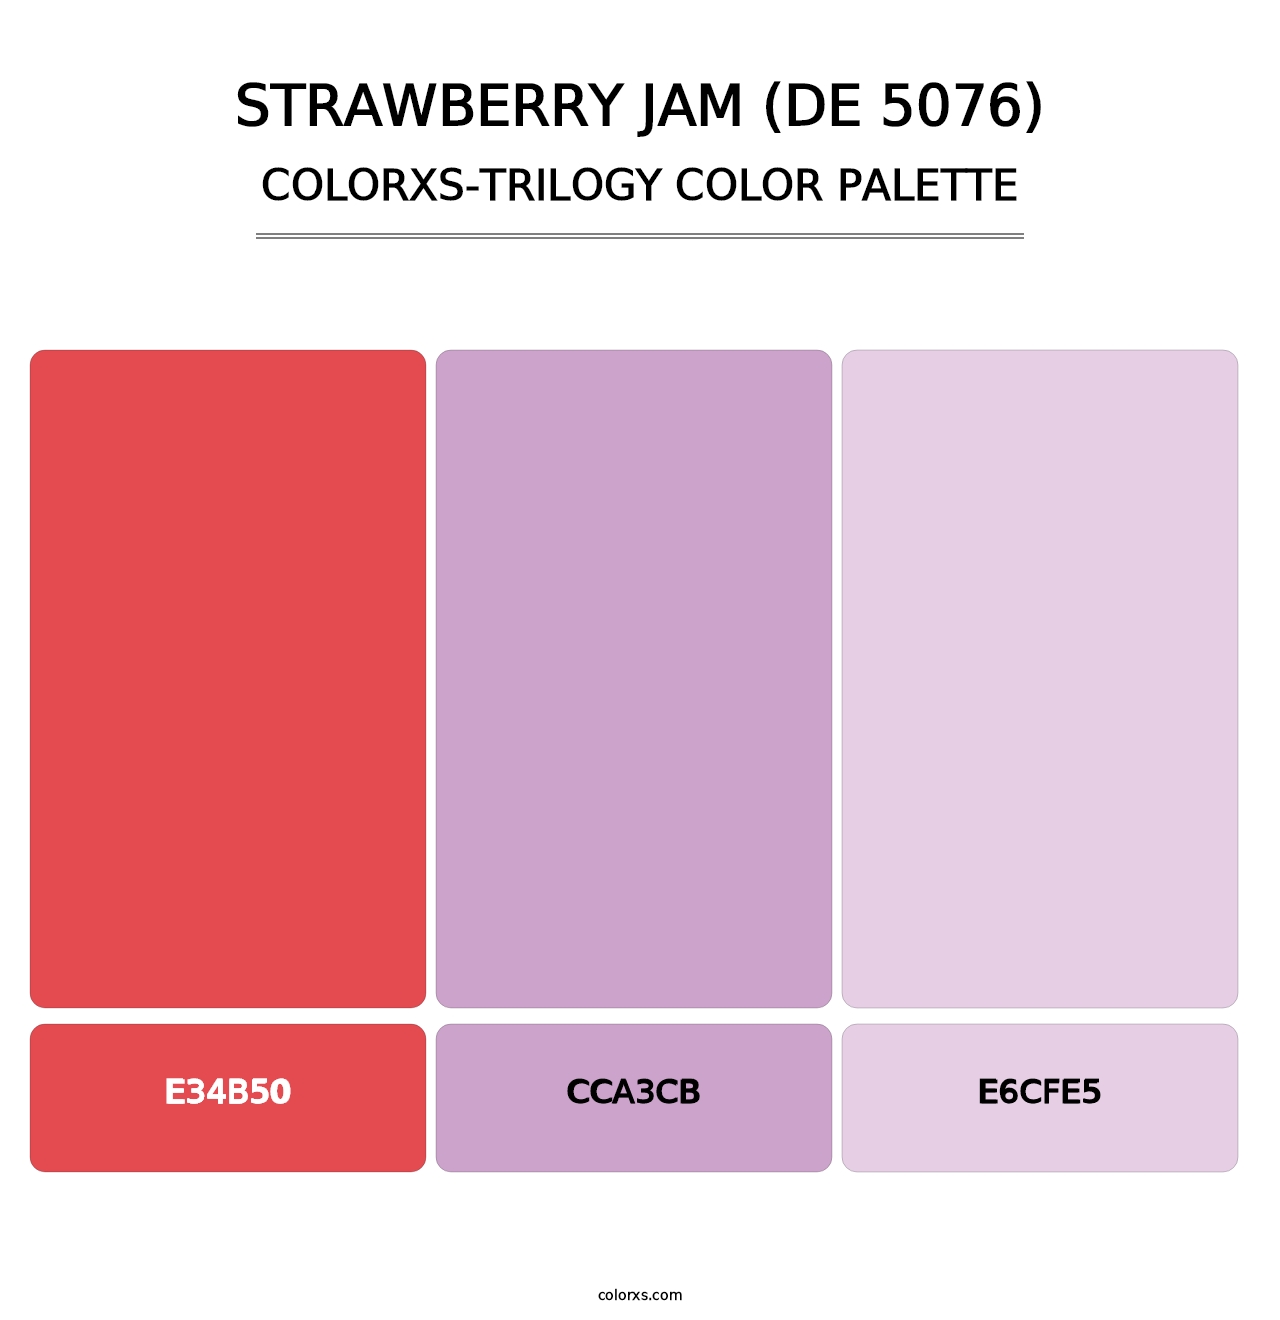 Strawberry Jam (DE 5076) - Colorxs Trilogy Palette